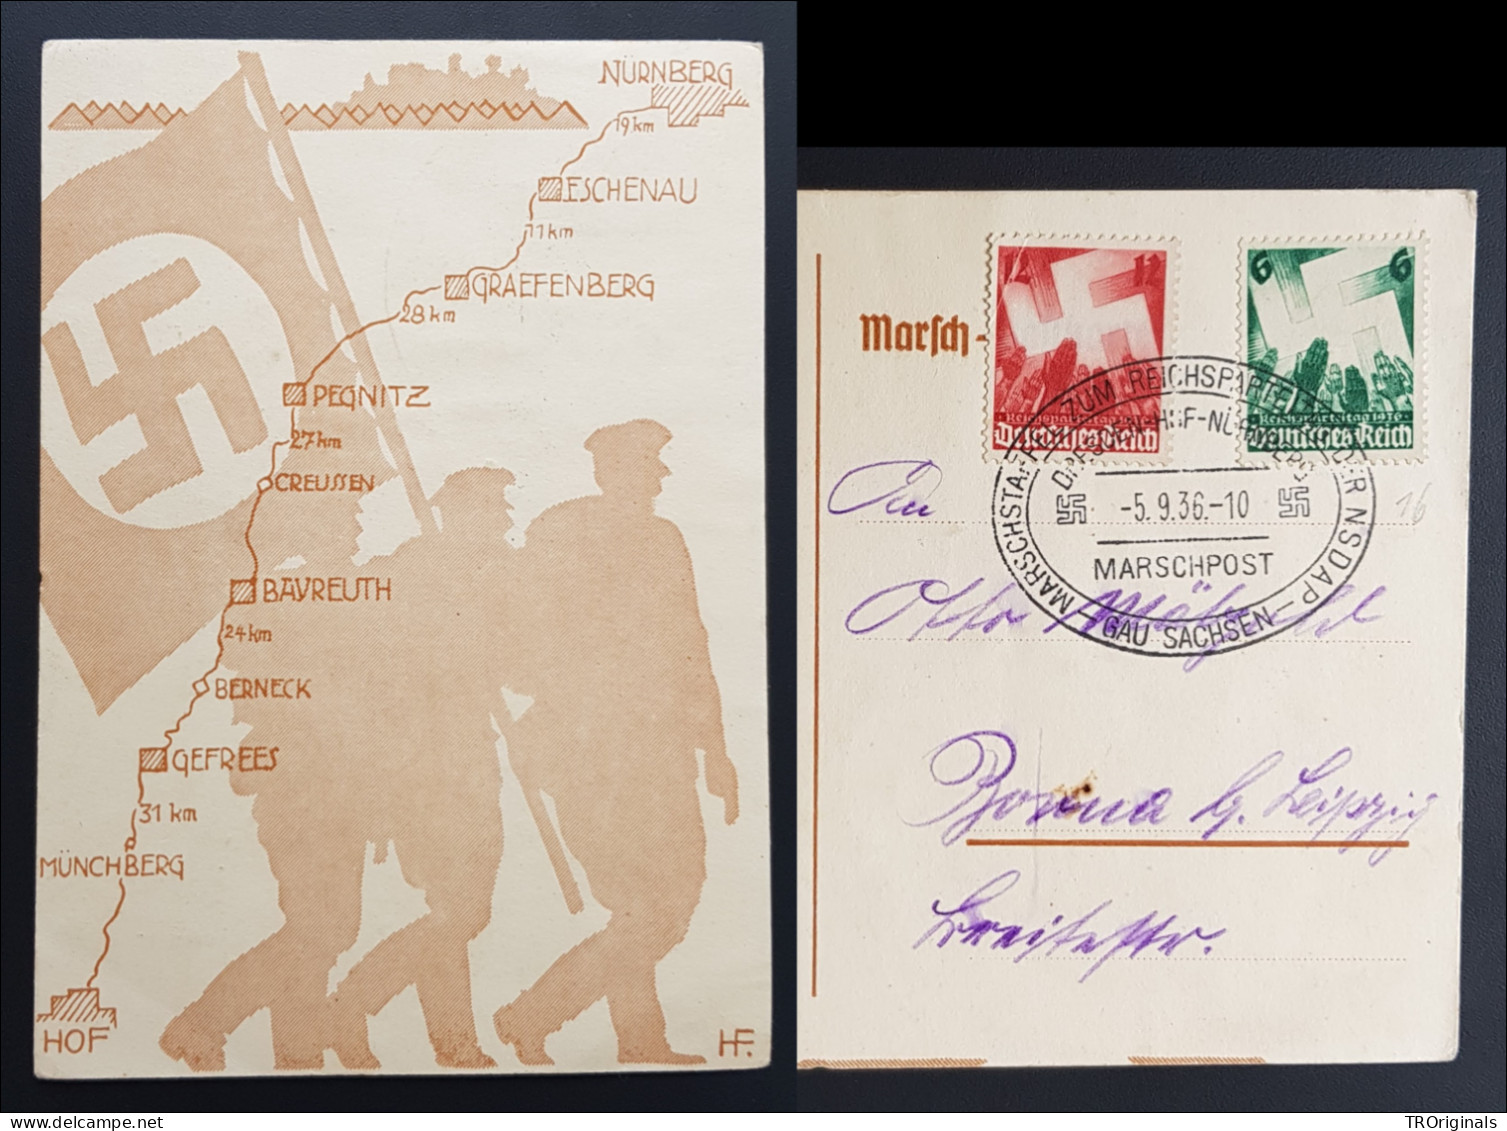 RARE GERMANY THIRD 3rd REICH ORIGINAL CARD NSDAP NÜRNBERG REICHSPARTEITAG 1936 - Guerre 1939-45